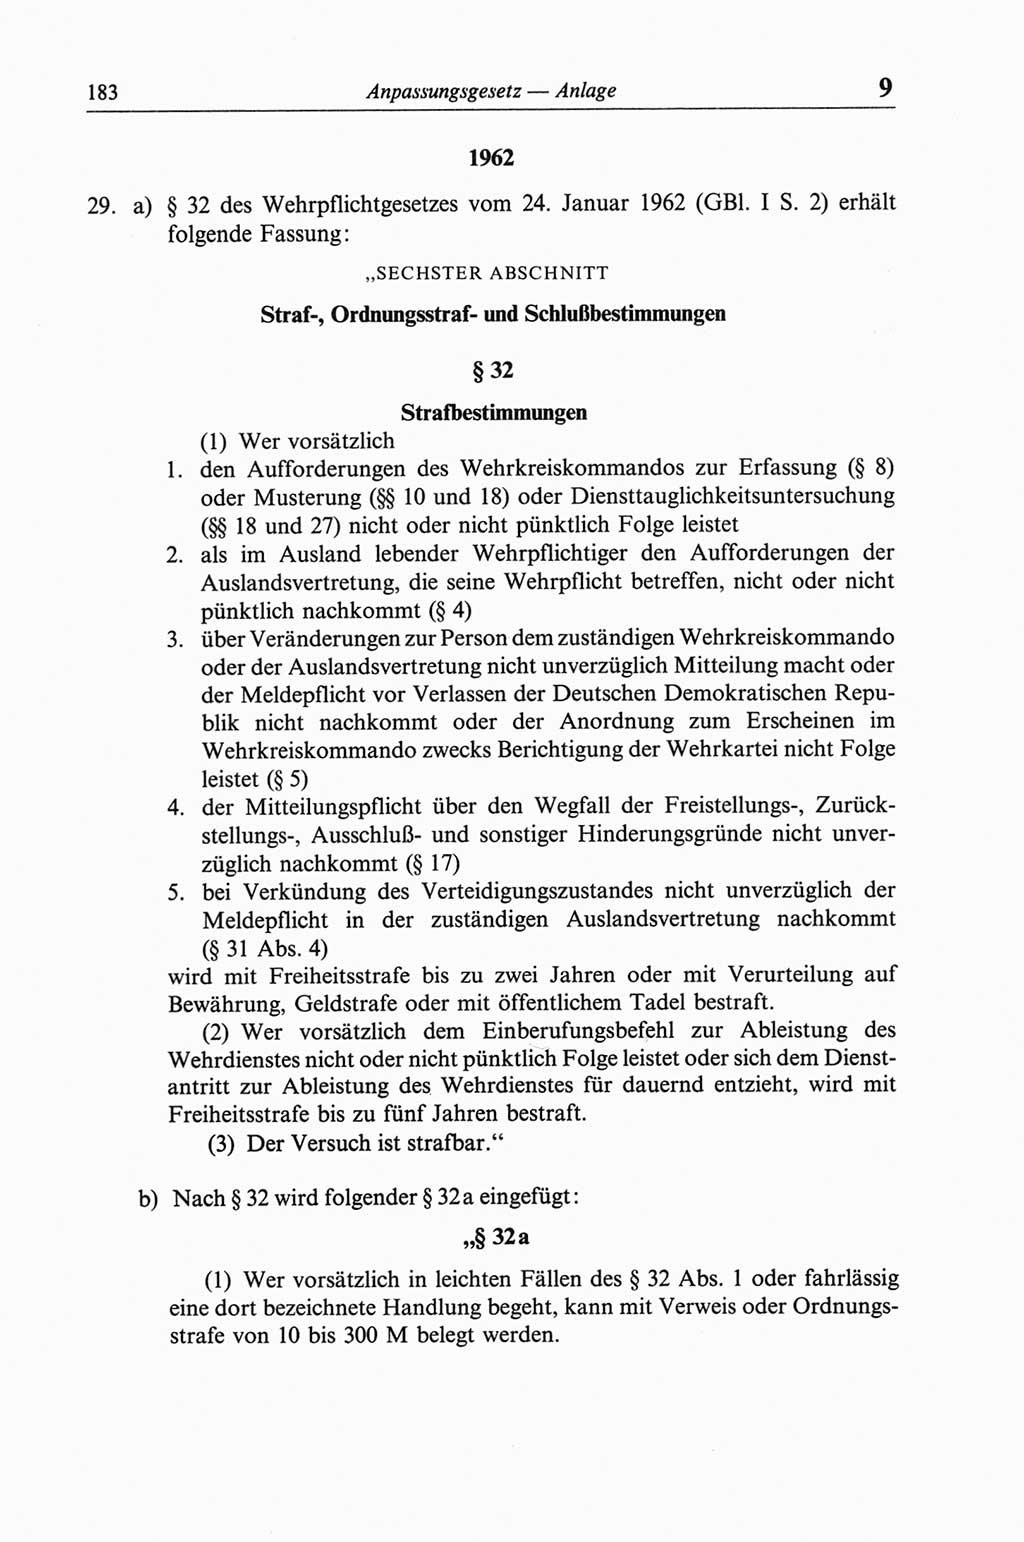 Strafgesetzbuch (StGB) der Deutschen Demokratischen Republik (DDR) und angrenzende Gesetze und Bestimmungen 1968, Seite 183 (StGB Ges. Best. DDR 1968, S. 183)